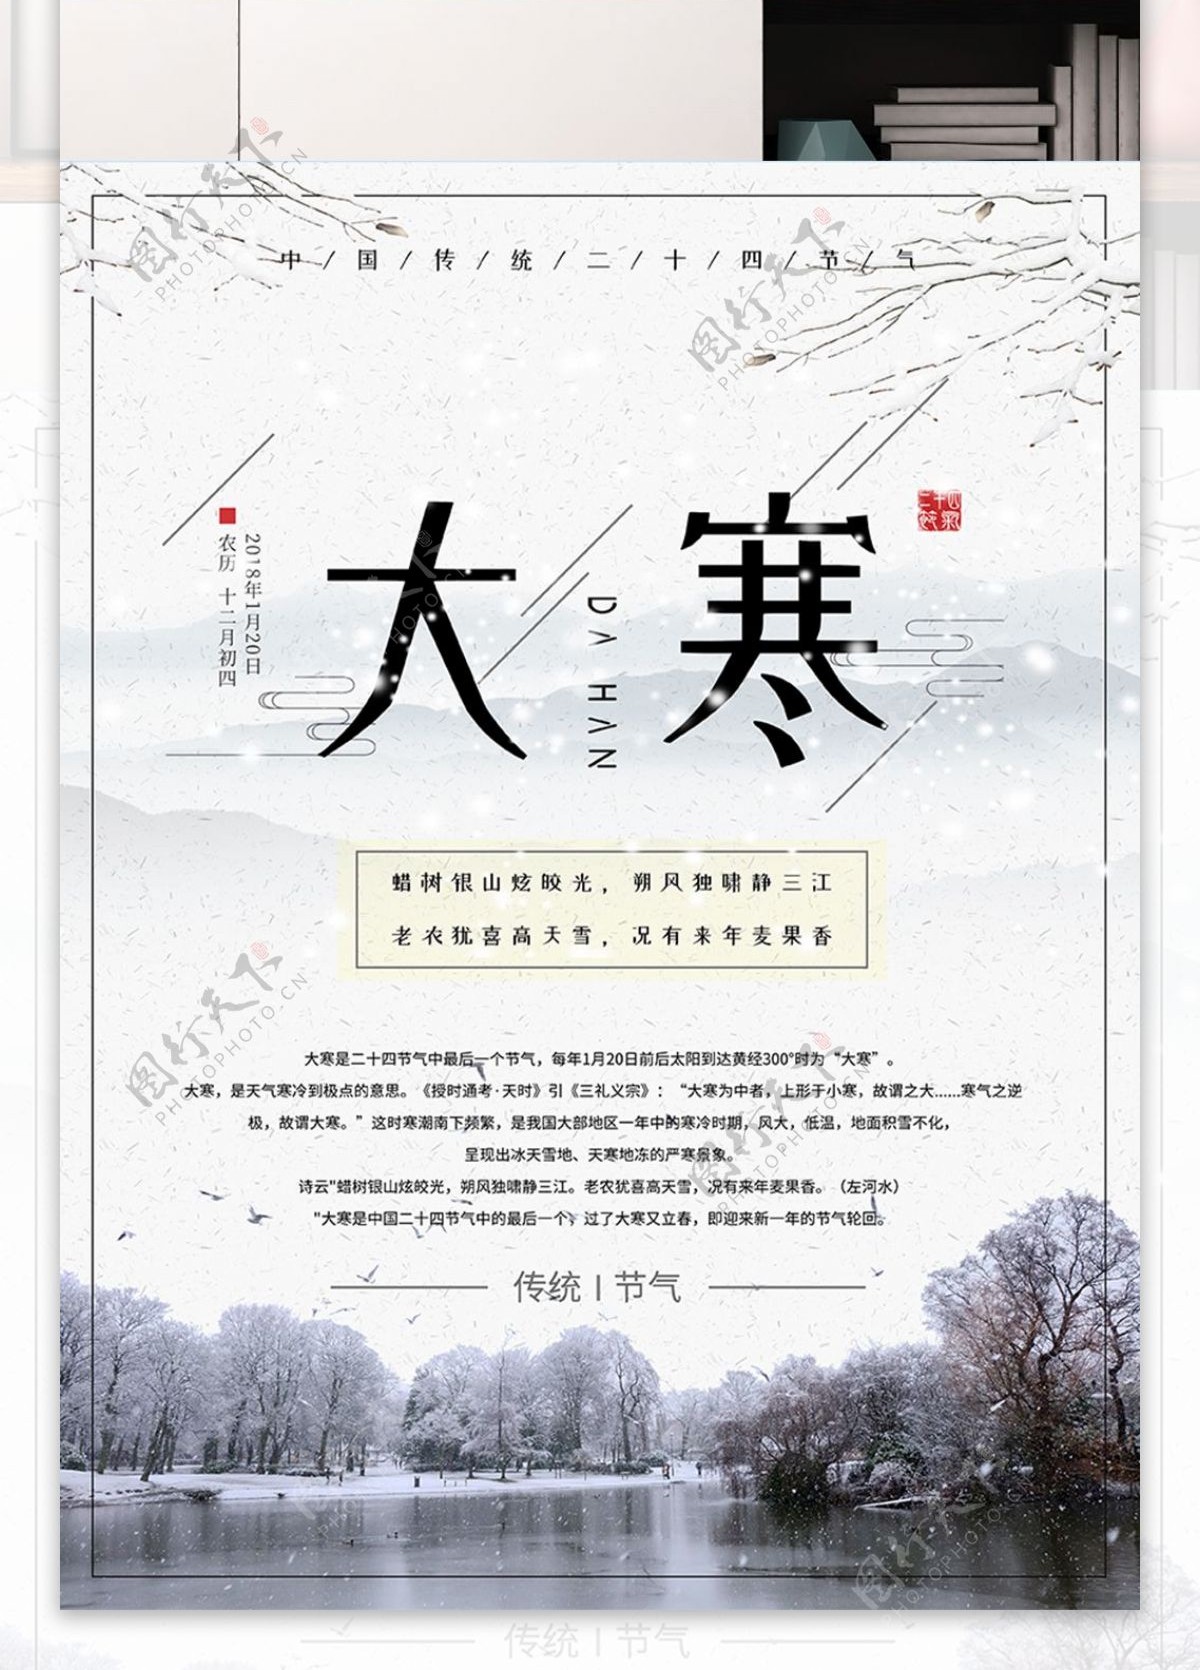 简约中国传统二十四节气大寒冬季节日海报